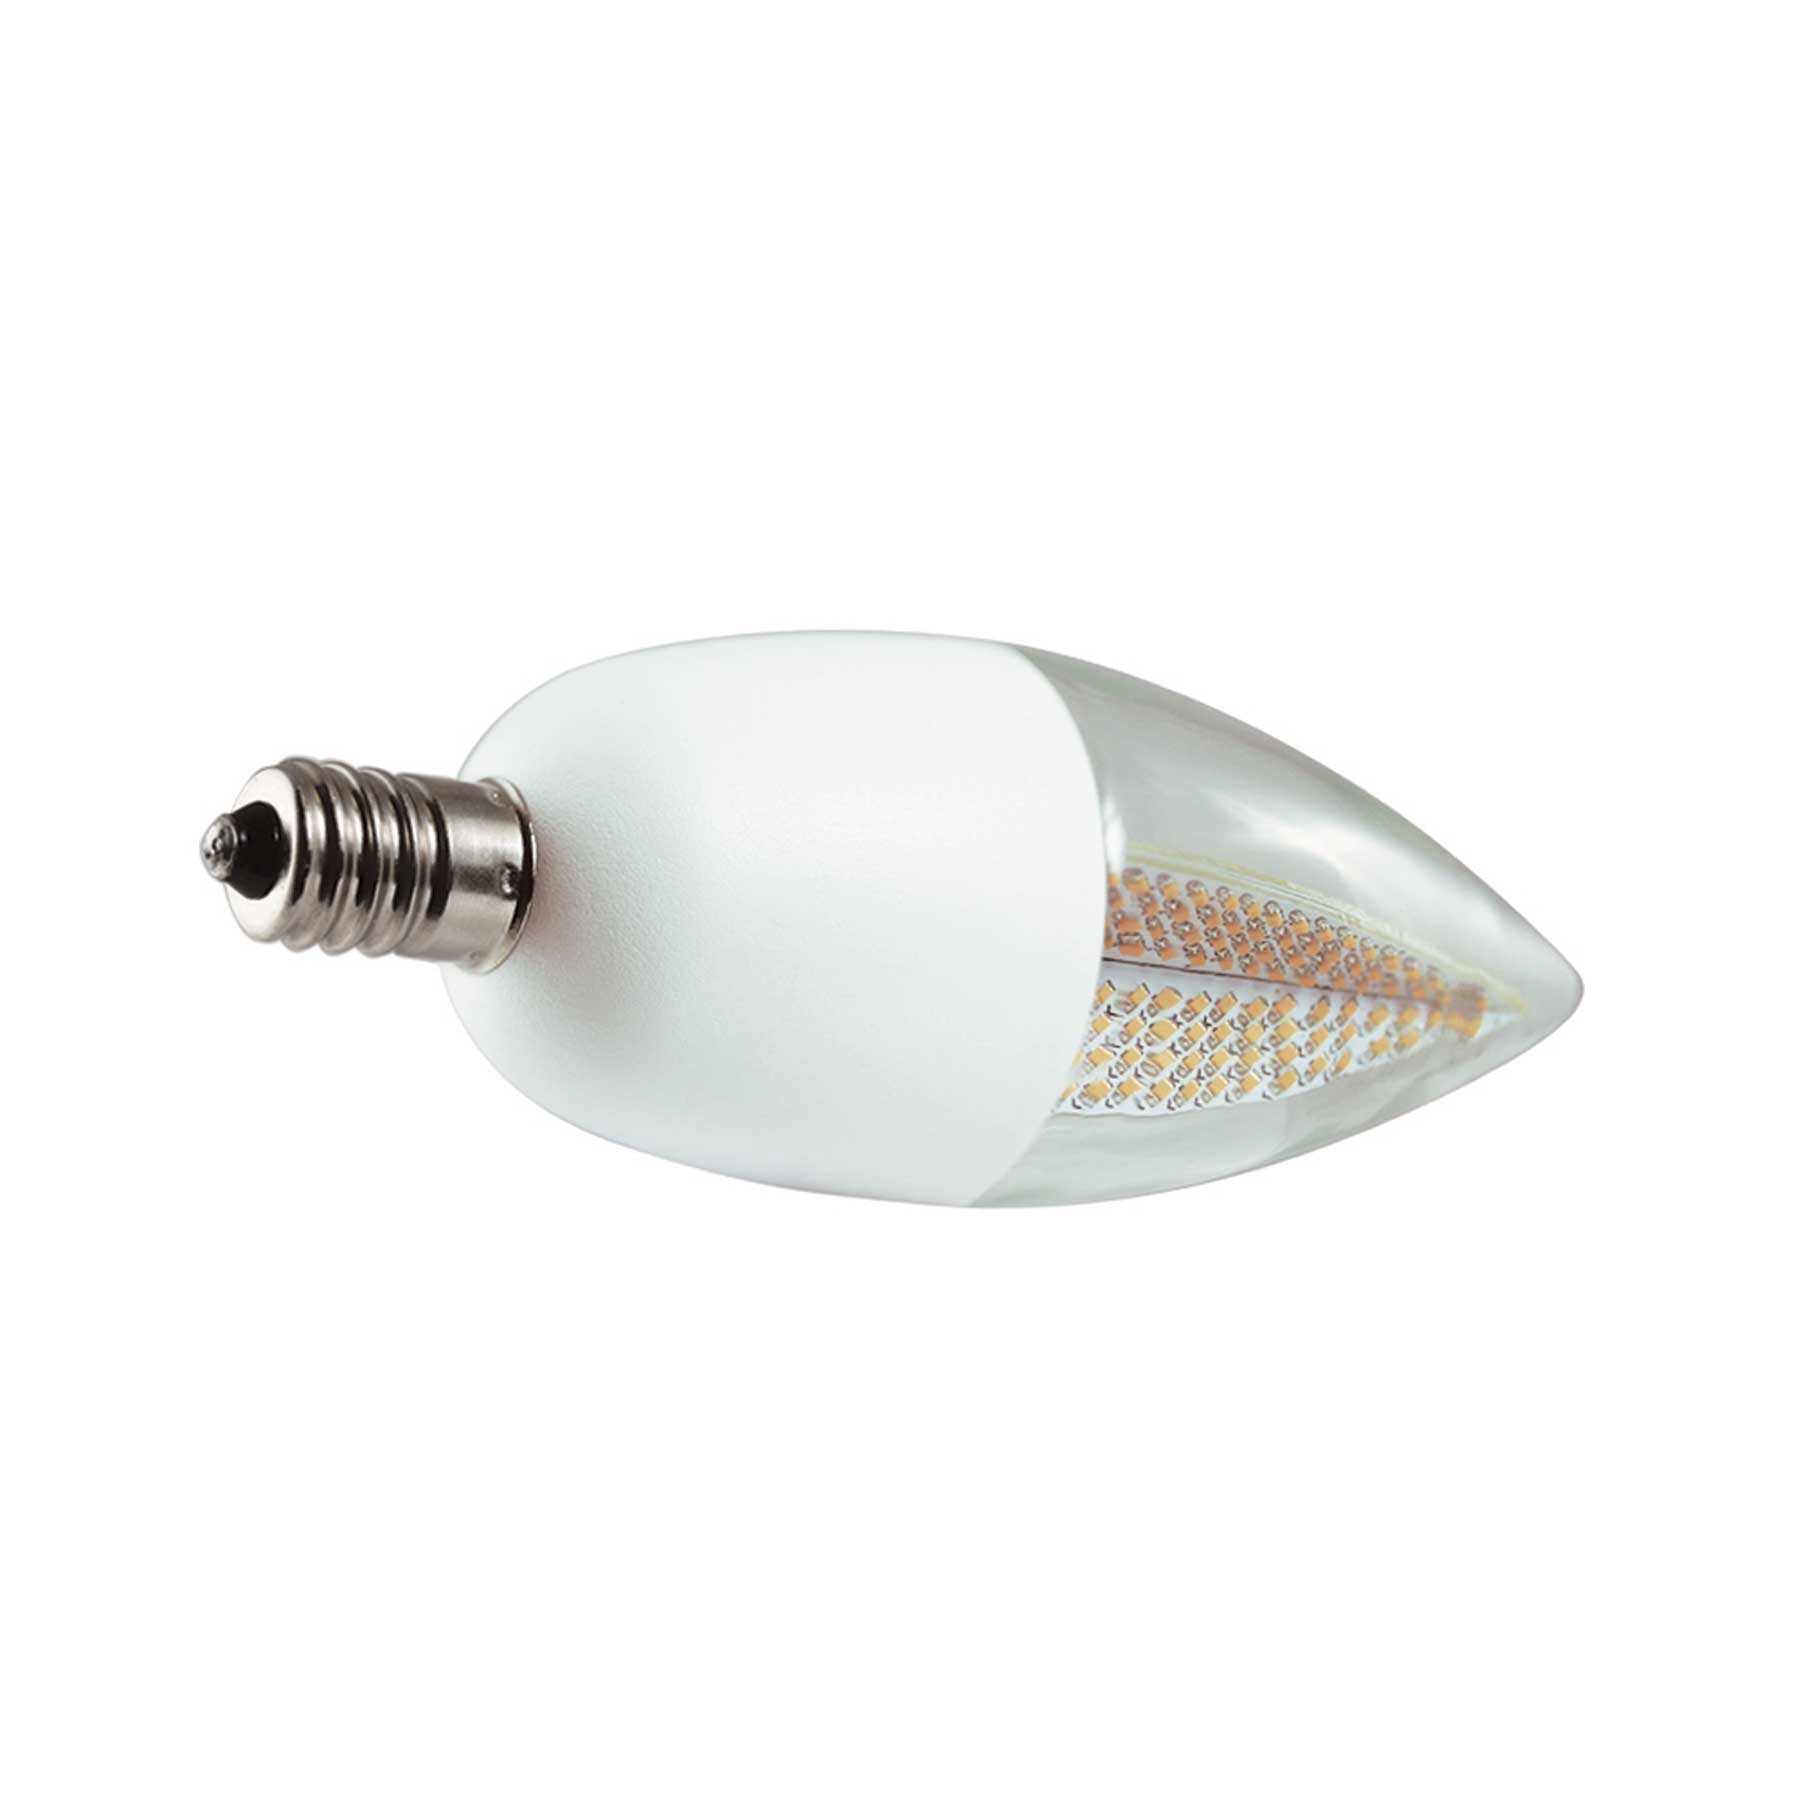 Candelabra Flame 1800K Flicker LED Light Bulb, White Base